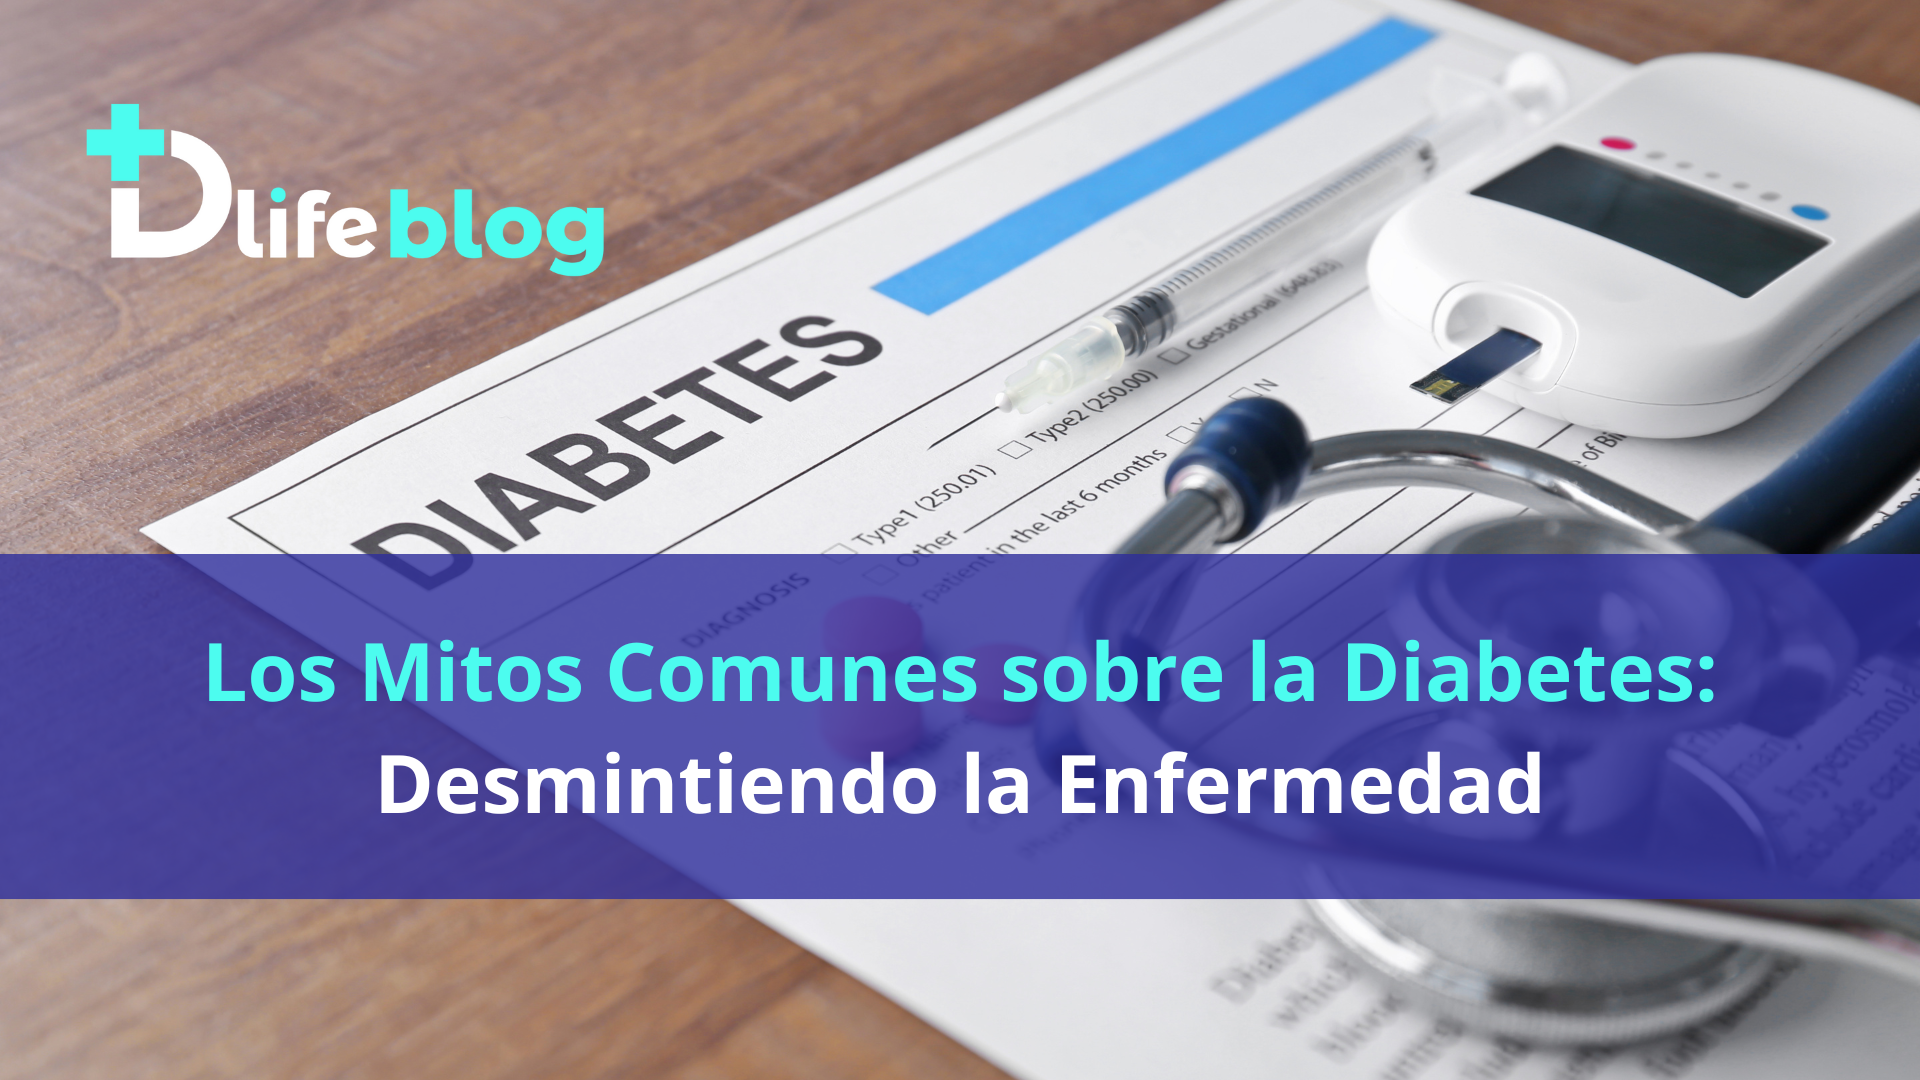 los mitos comunes sobre la diabetes: desmintiendo la enfermedad - Blog dlife